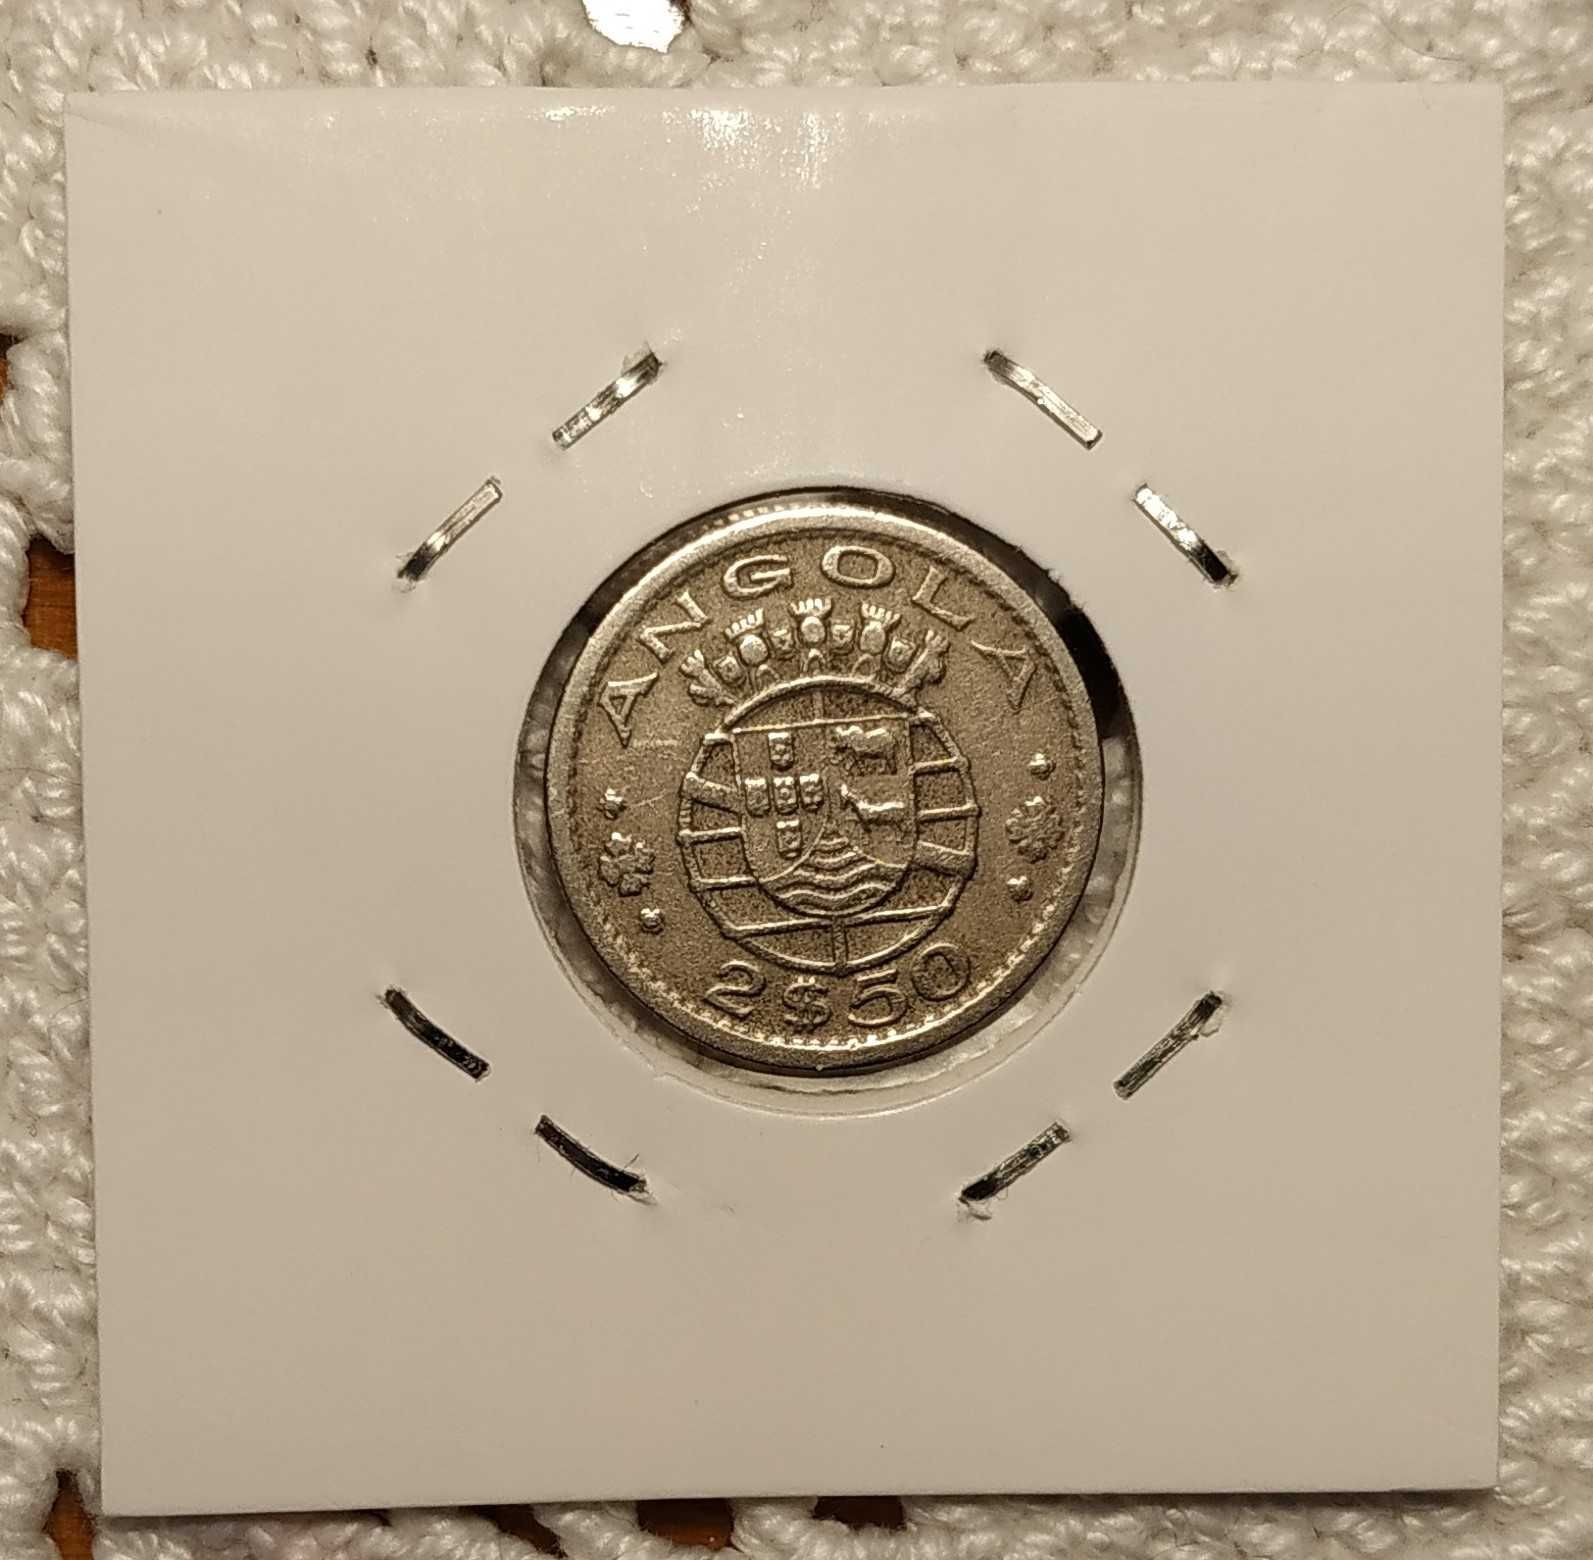 Angola - moeda de 2,5 escudos de 1956